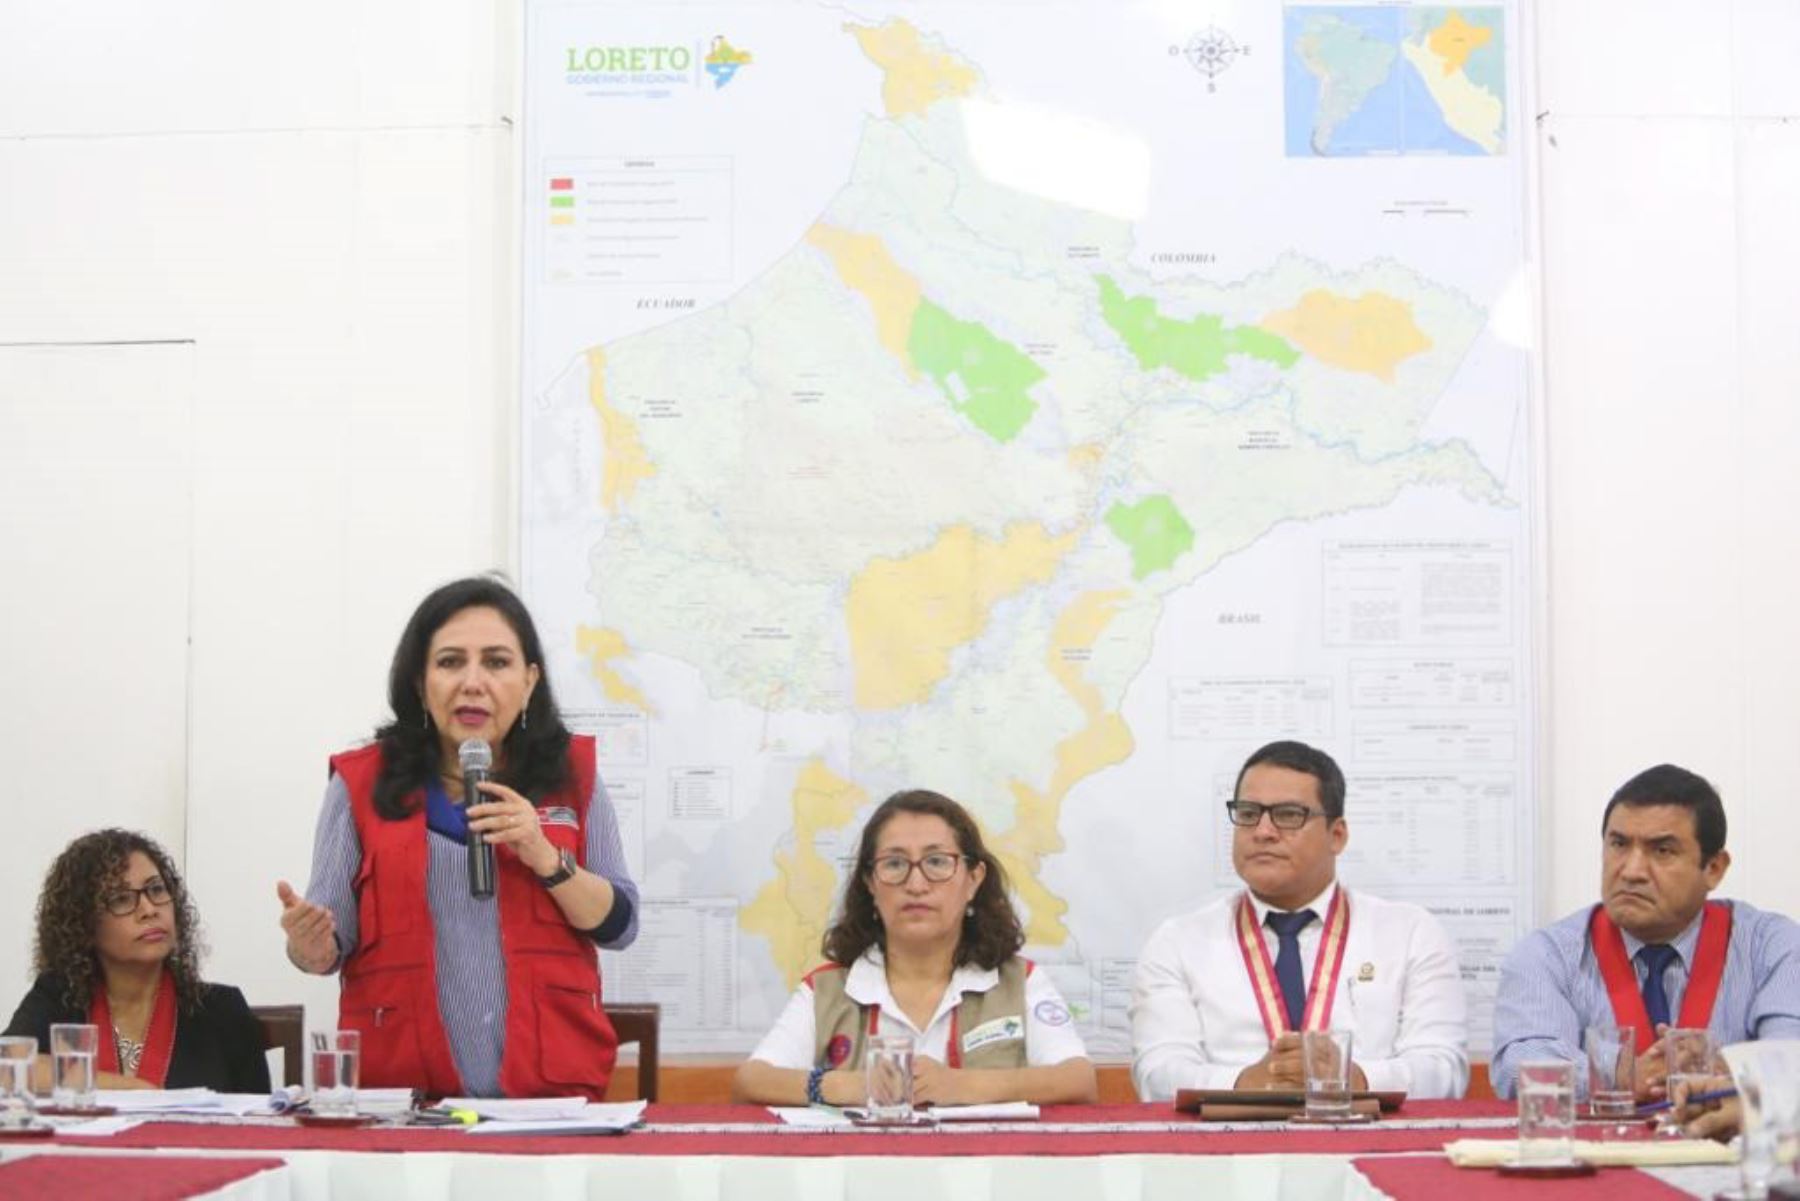 La ministra de la Mujer, Gloria Montenegro anunció la Implementación de un nuevo Centro de Emergencia Mujer en Loreto. ANDINA/Difusión